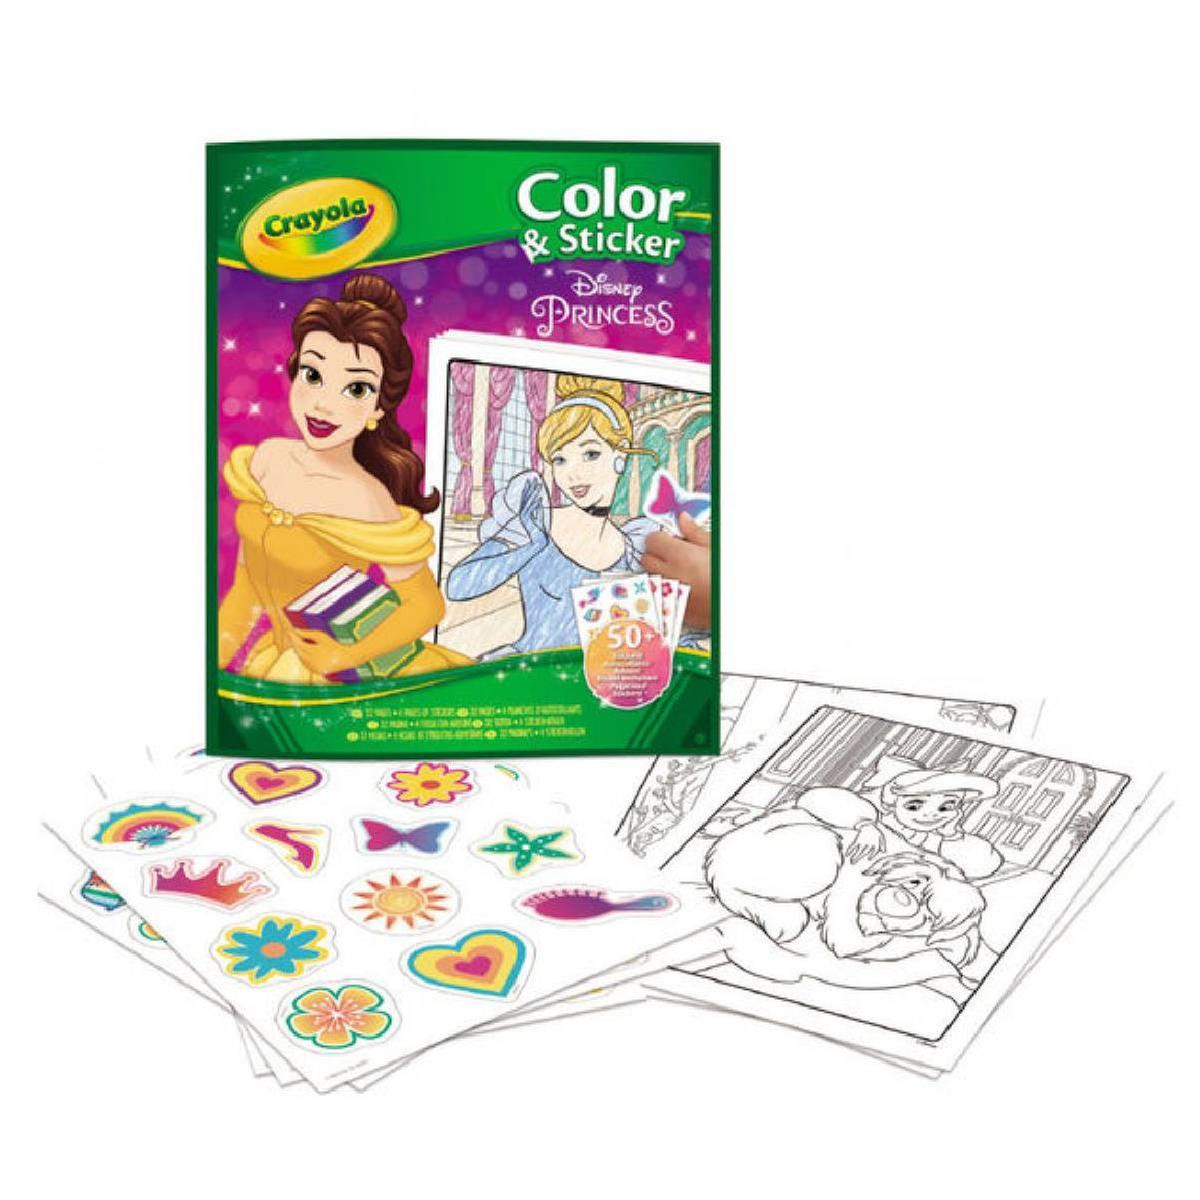 Os Meus Autocolantes para Colorir: Princesas